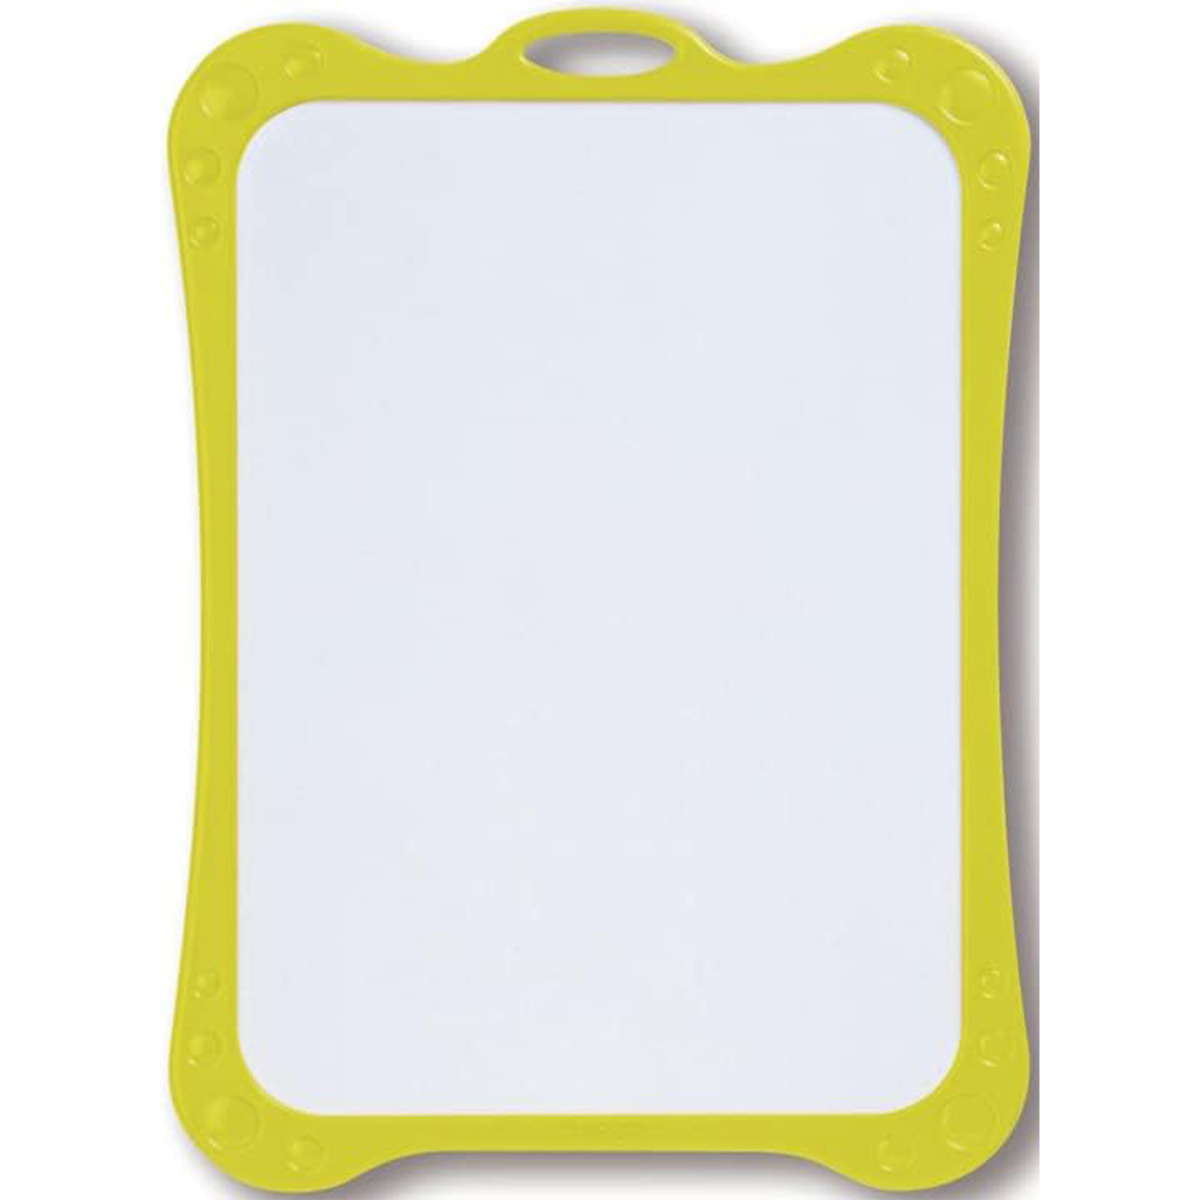 Maped Dry Erase White Board Accessory, 258500